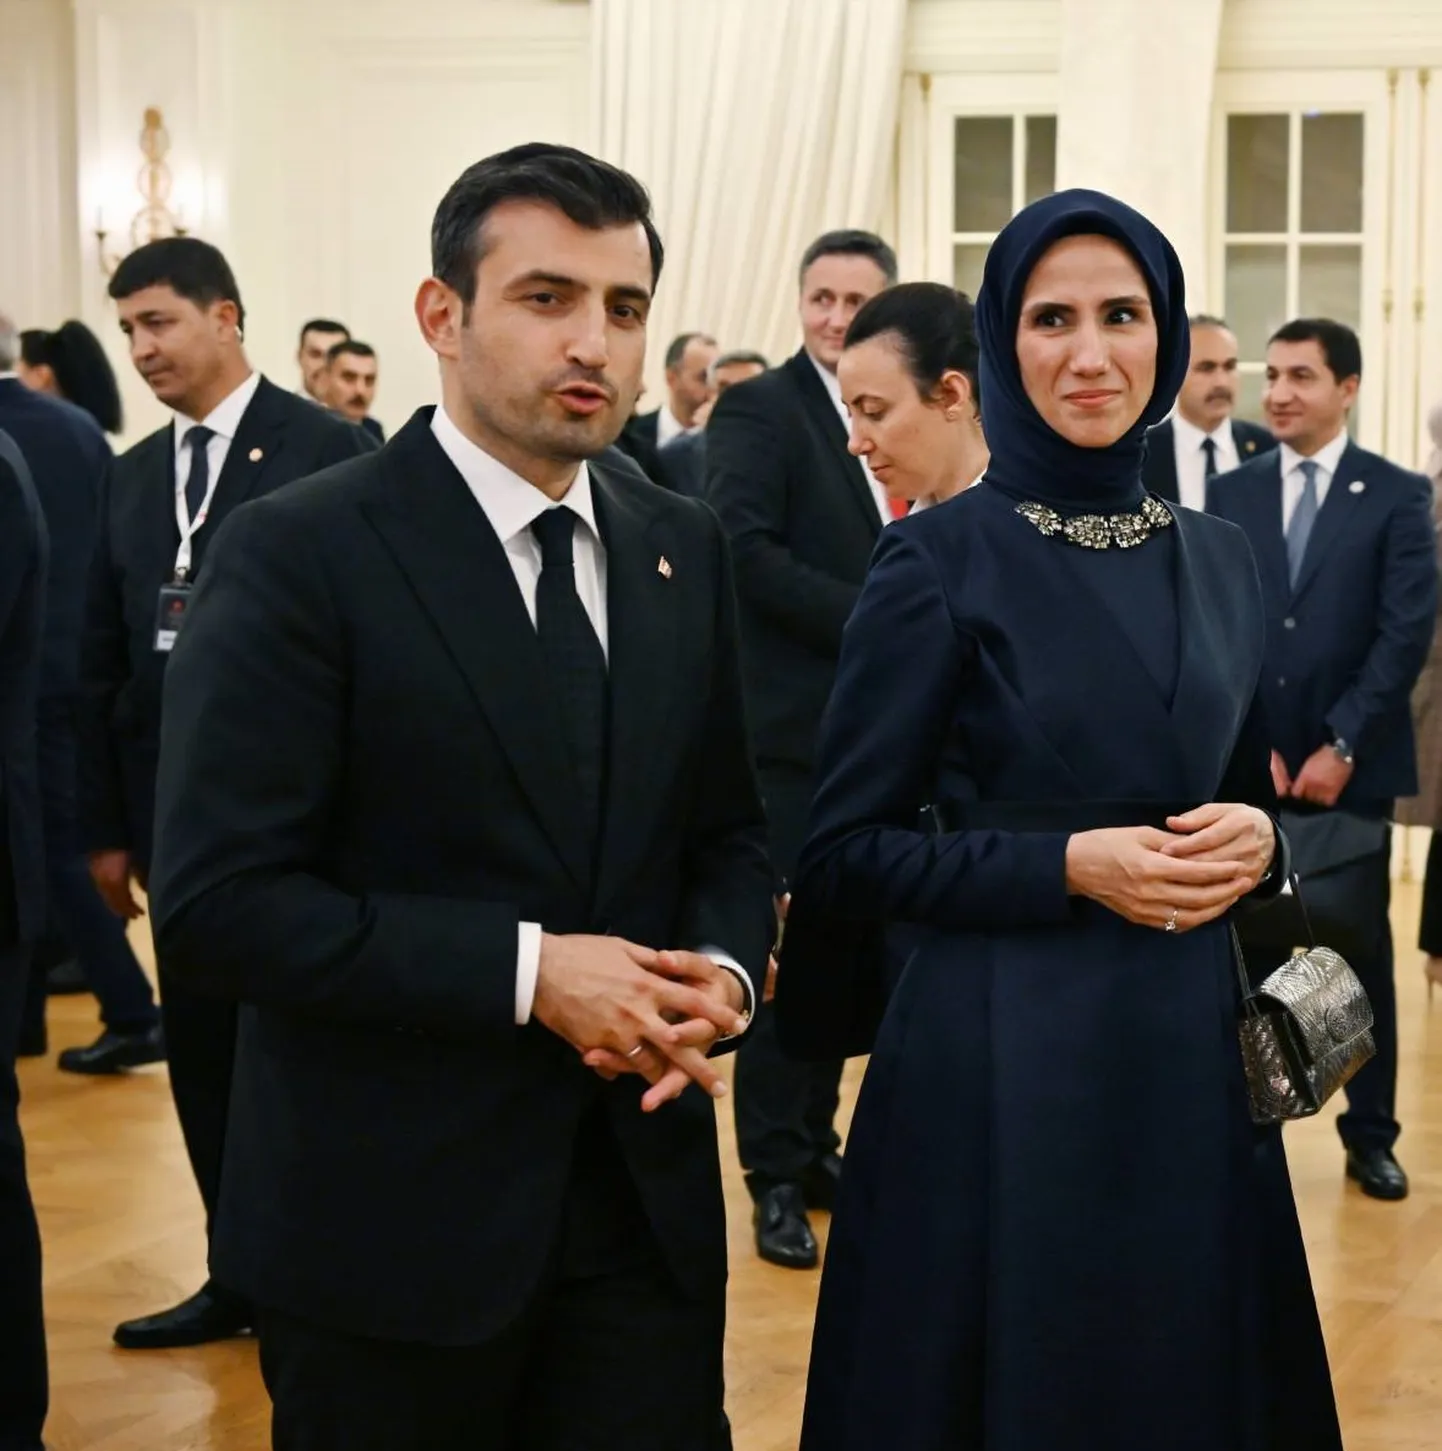 Droonitööstur Selçuk Bayraktar mullu koos abikaasa Sümeyye Erdoğaniga viimase isa, Türgi presidendi Recep Tayyip Erdoğani korraldatud vastuvõtul Ankaras.